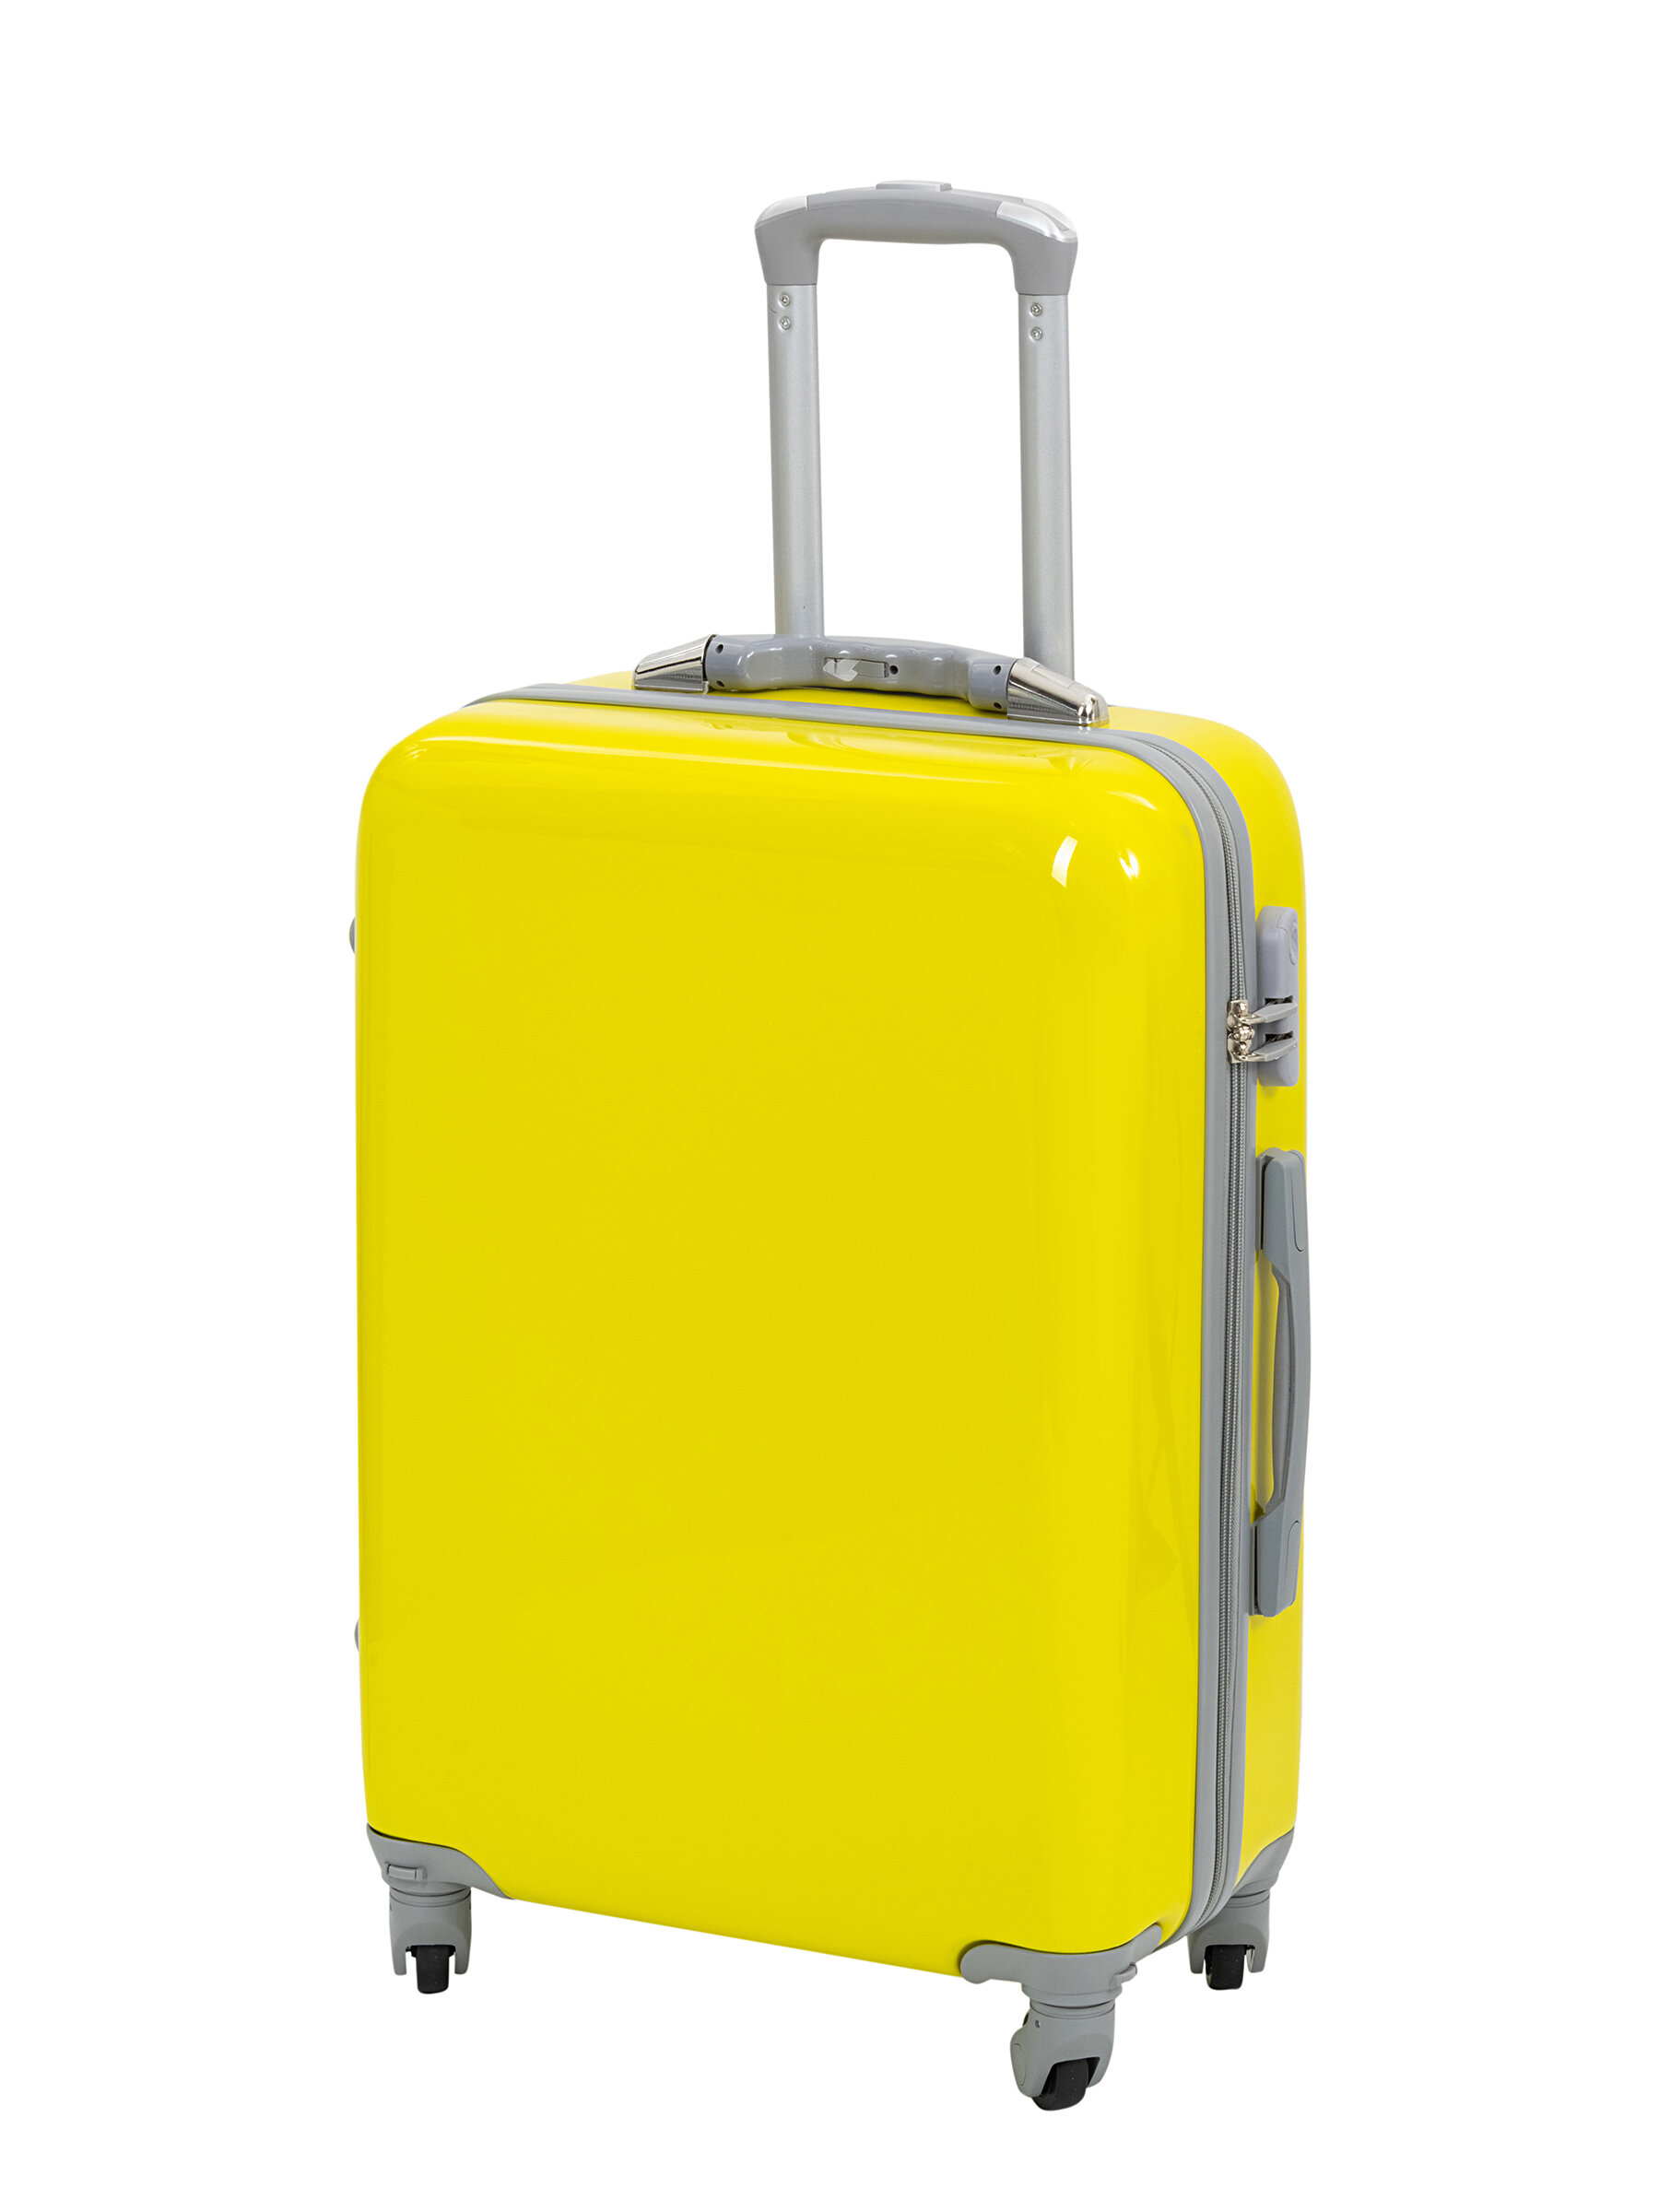 Чемодан на колесах дорожный большой семейный багаж для путешествий l TEVIN размер Л 73 см 105 л легкий 3.8 кг прочный поликарбонат Желтый яркий